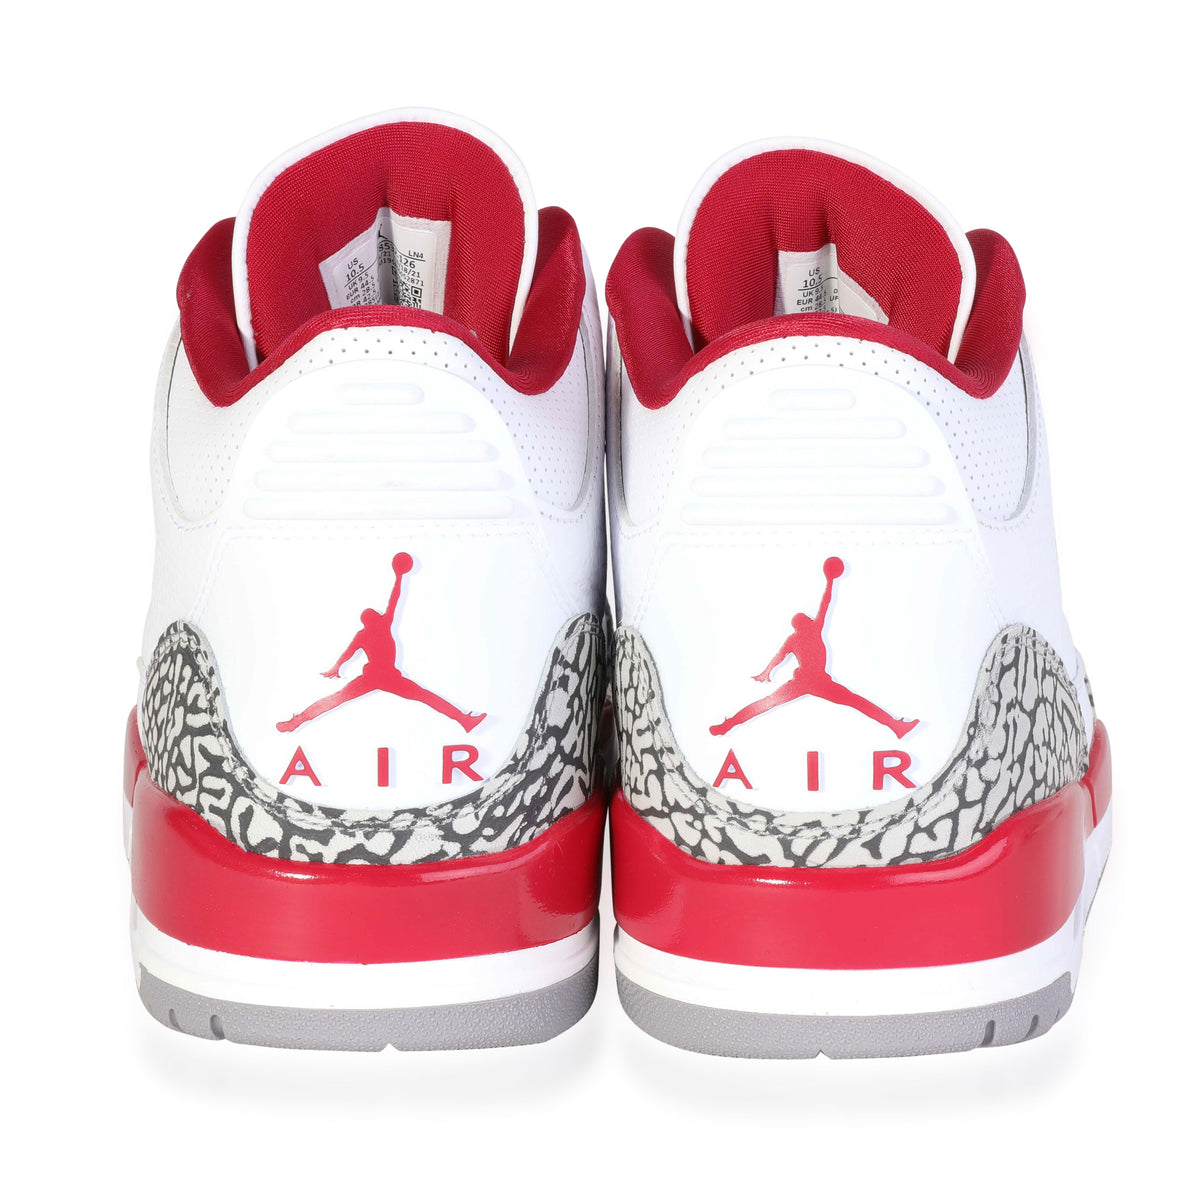 Air Jordan -  Air Jordan 3 Retro 'Cardinal Red' (10.5 US)